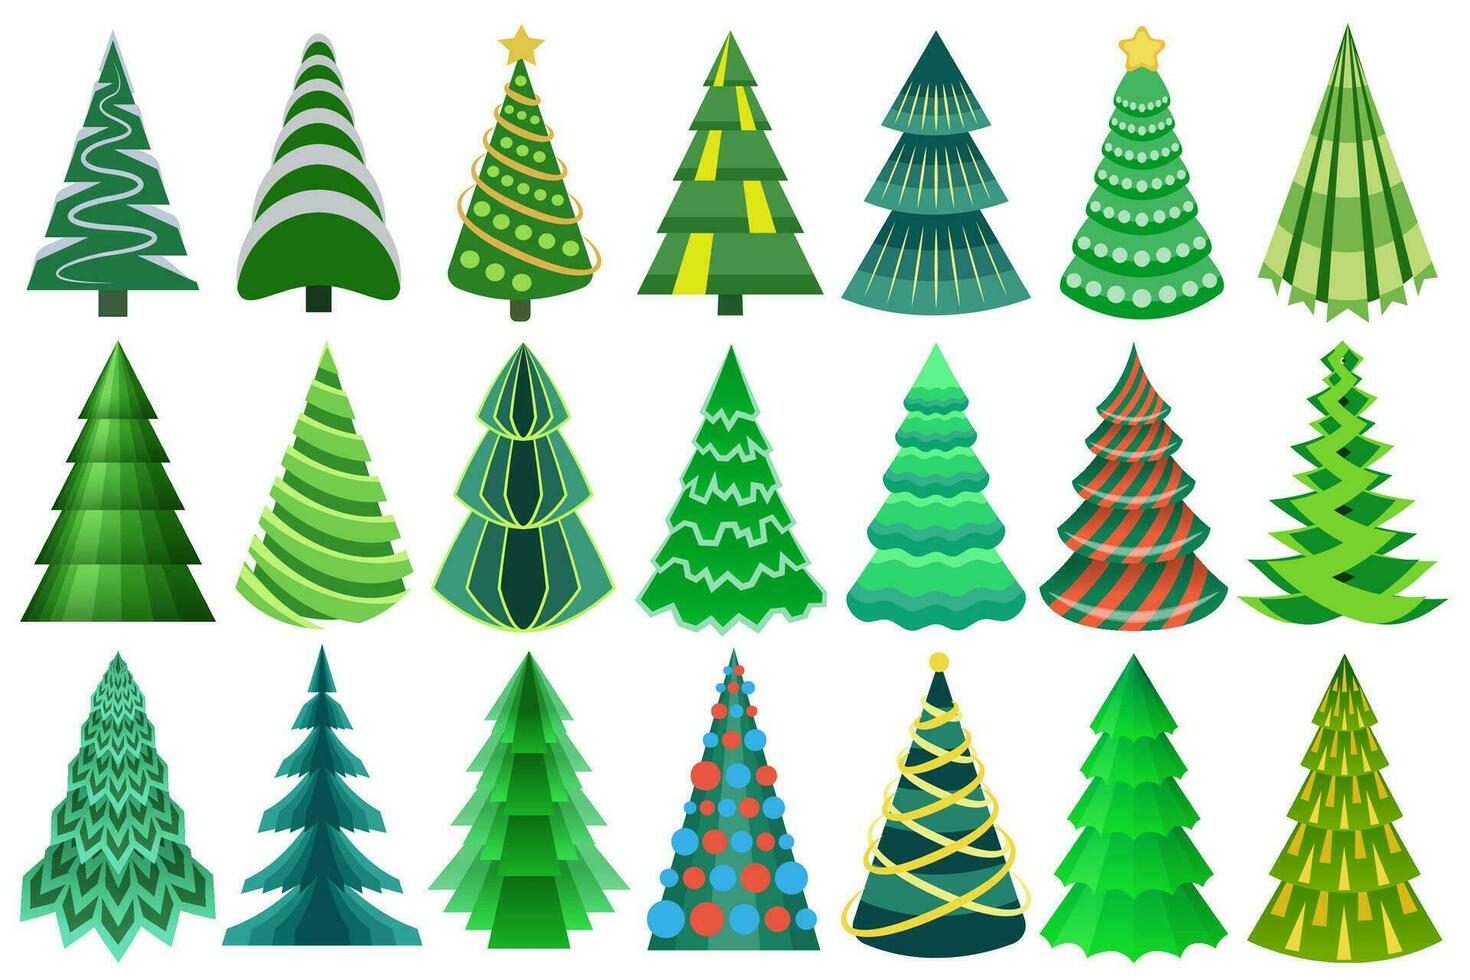 estilizado, decorativo Navidad árbol colocar. increíble abstracto, plano Navidad arboles colección para tu diseños vector